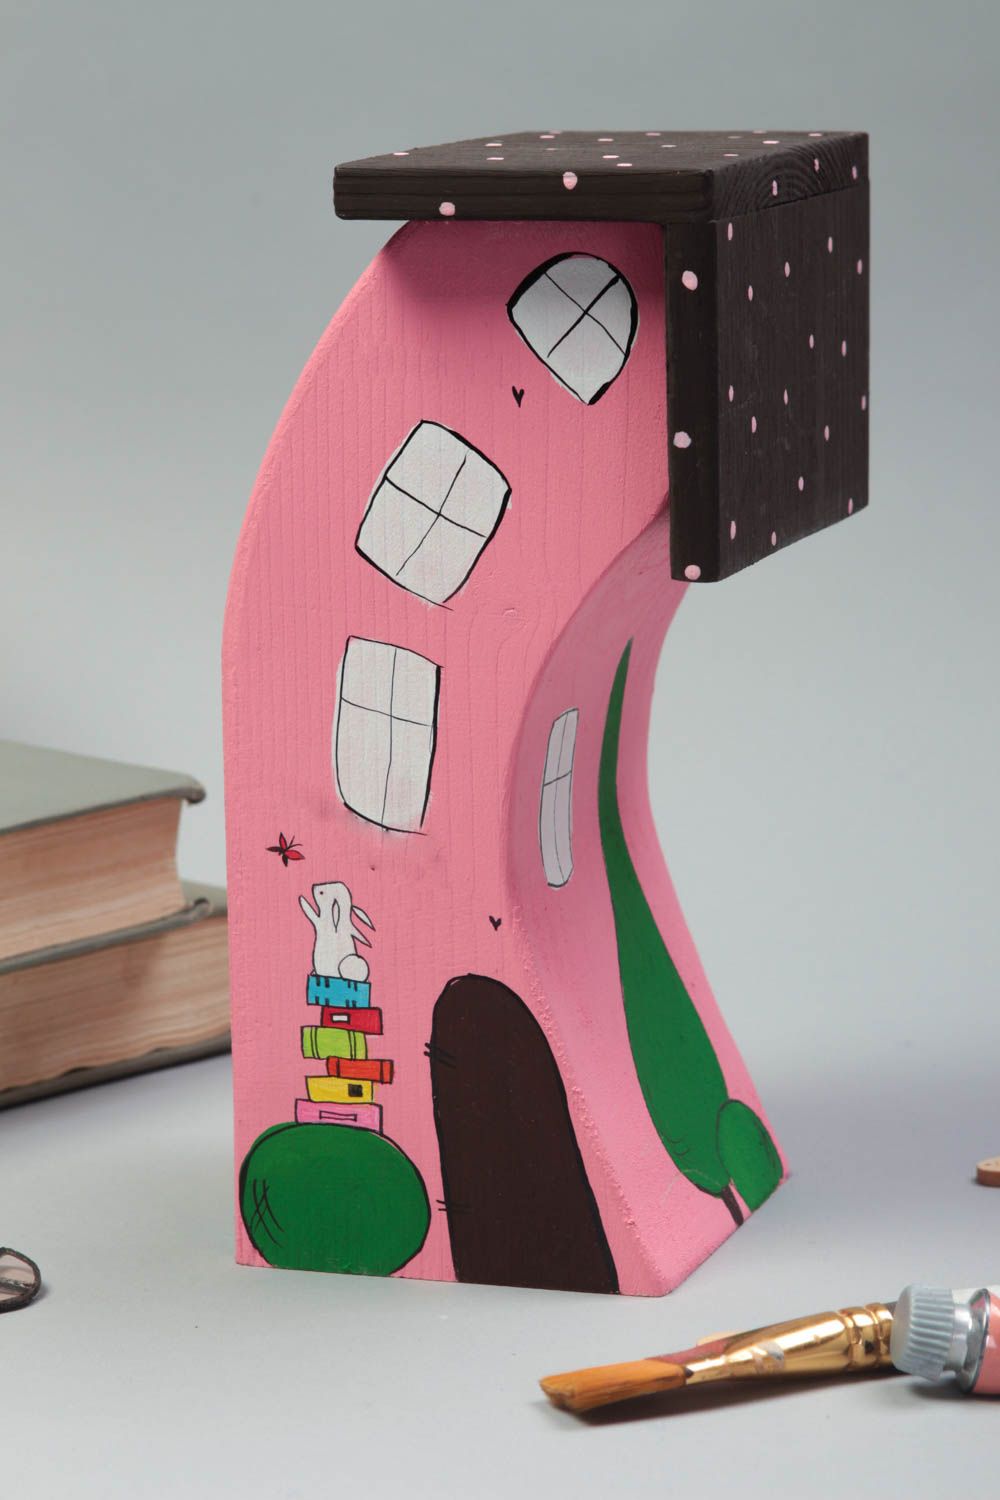 Розовый домик для декора дома ручной работы из дерева расписанный красками фото 1